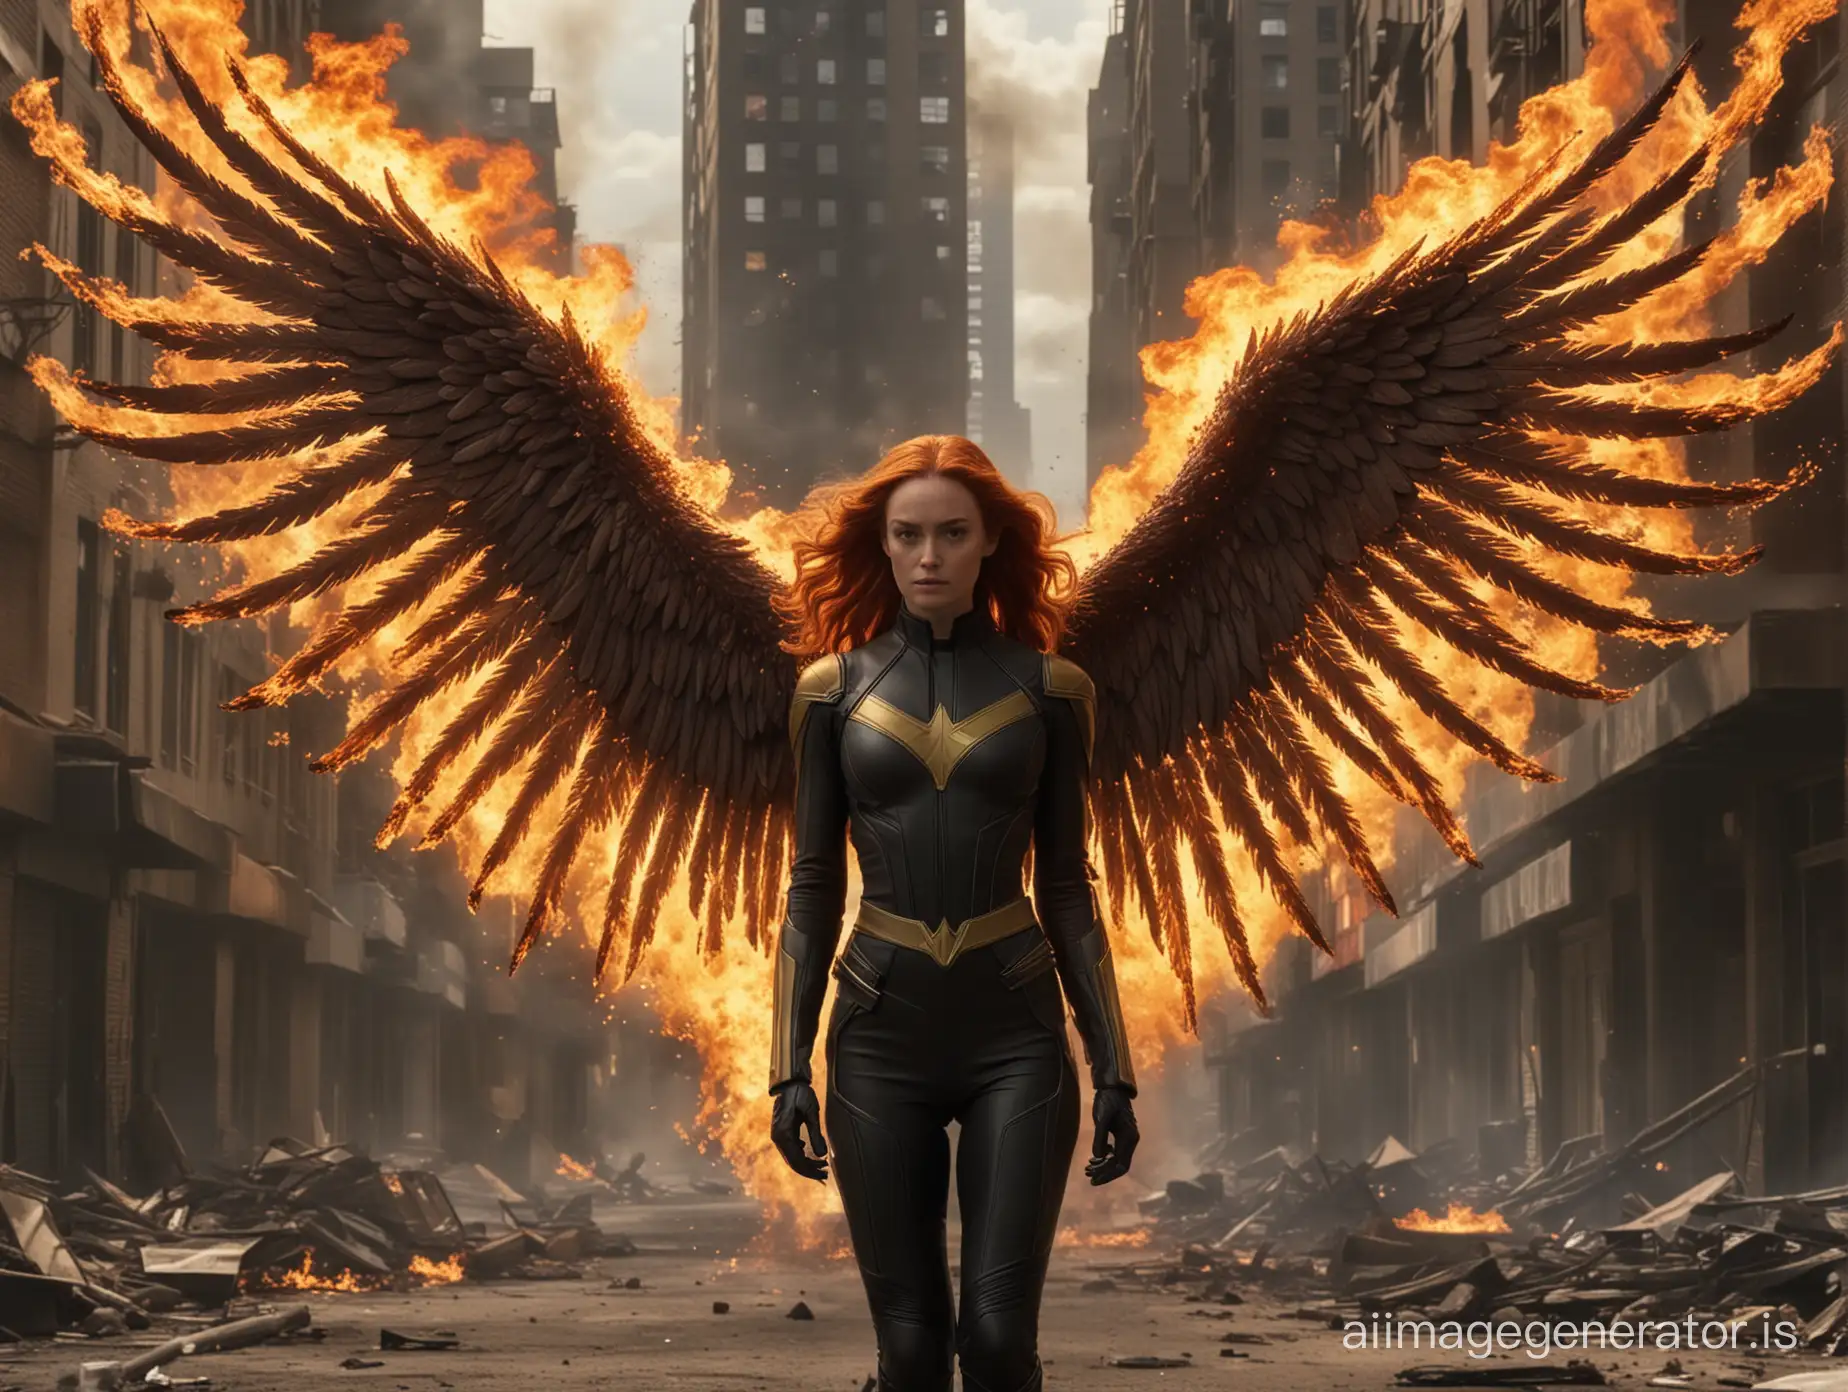 X-men Dark Phoenix burned out city fiery angel wings

